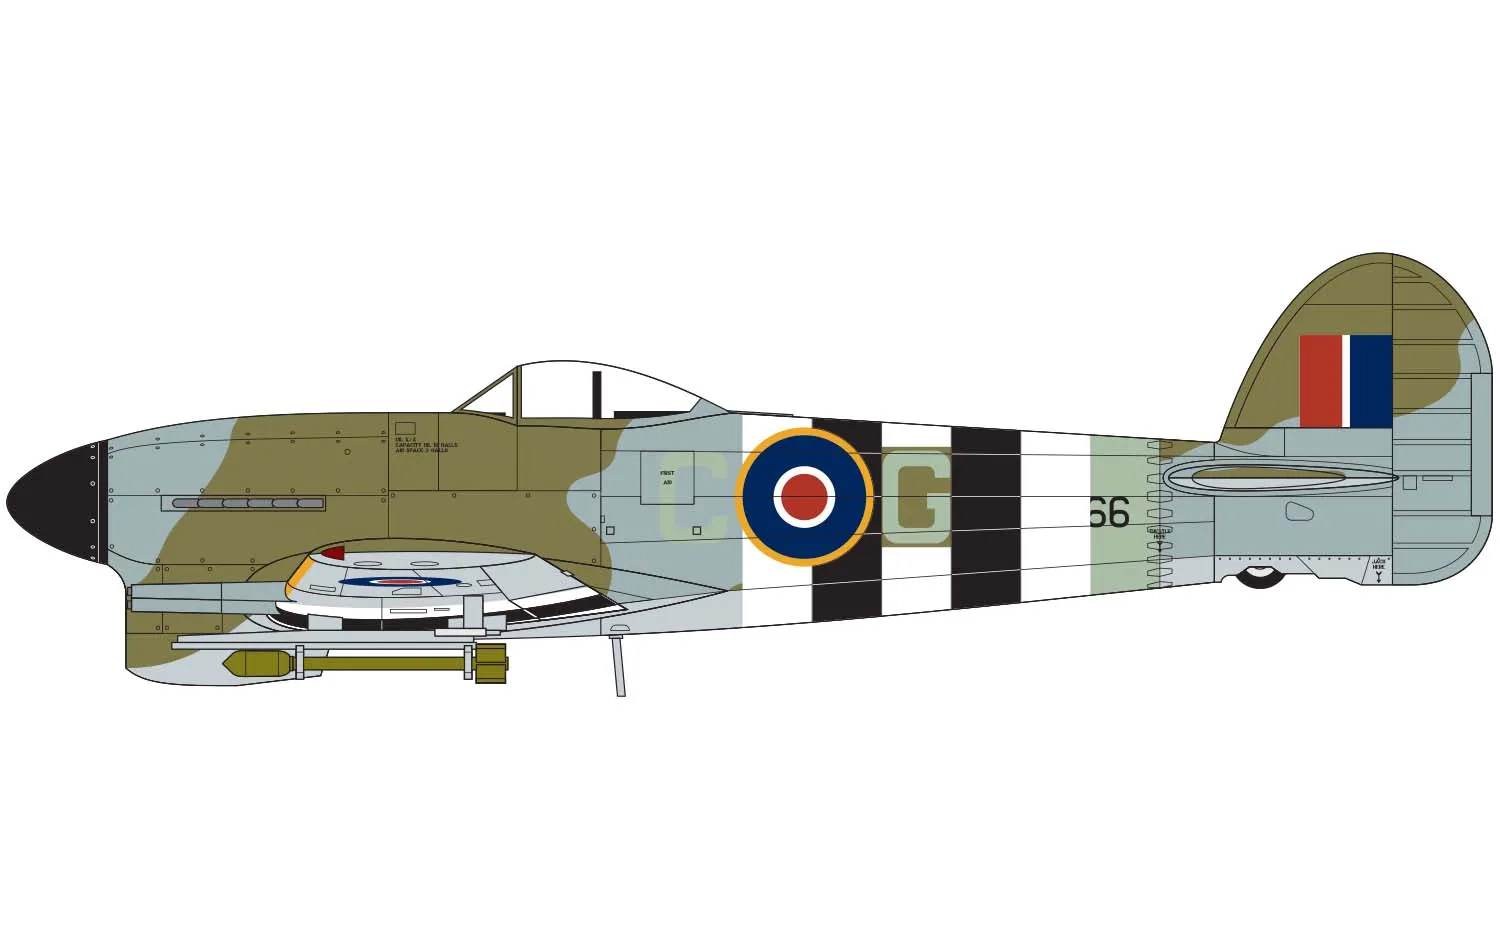 Hawker Typhoon Mk.IB